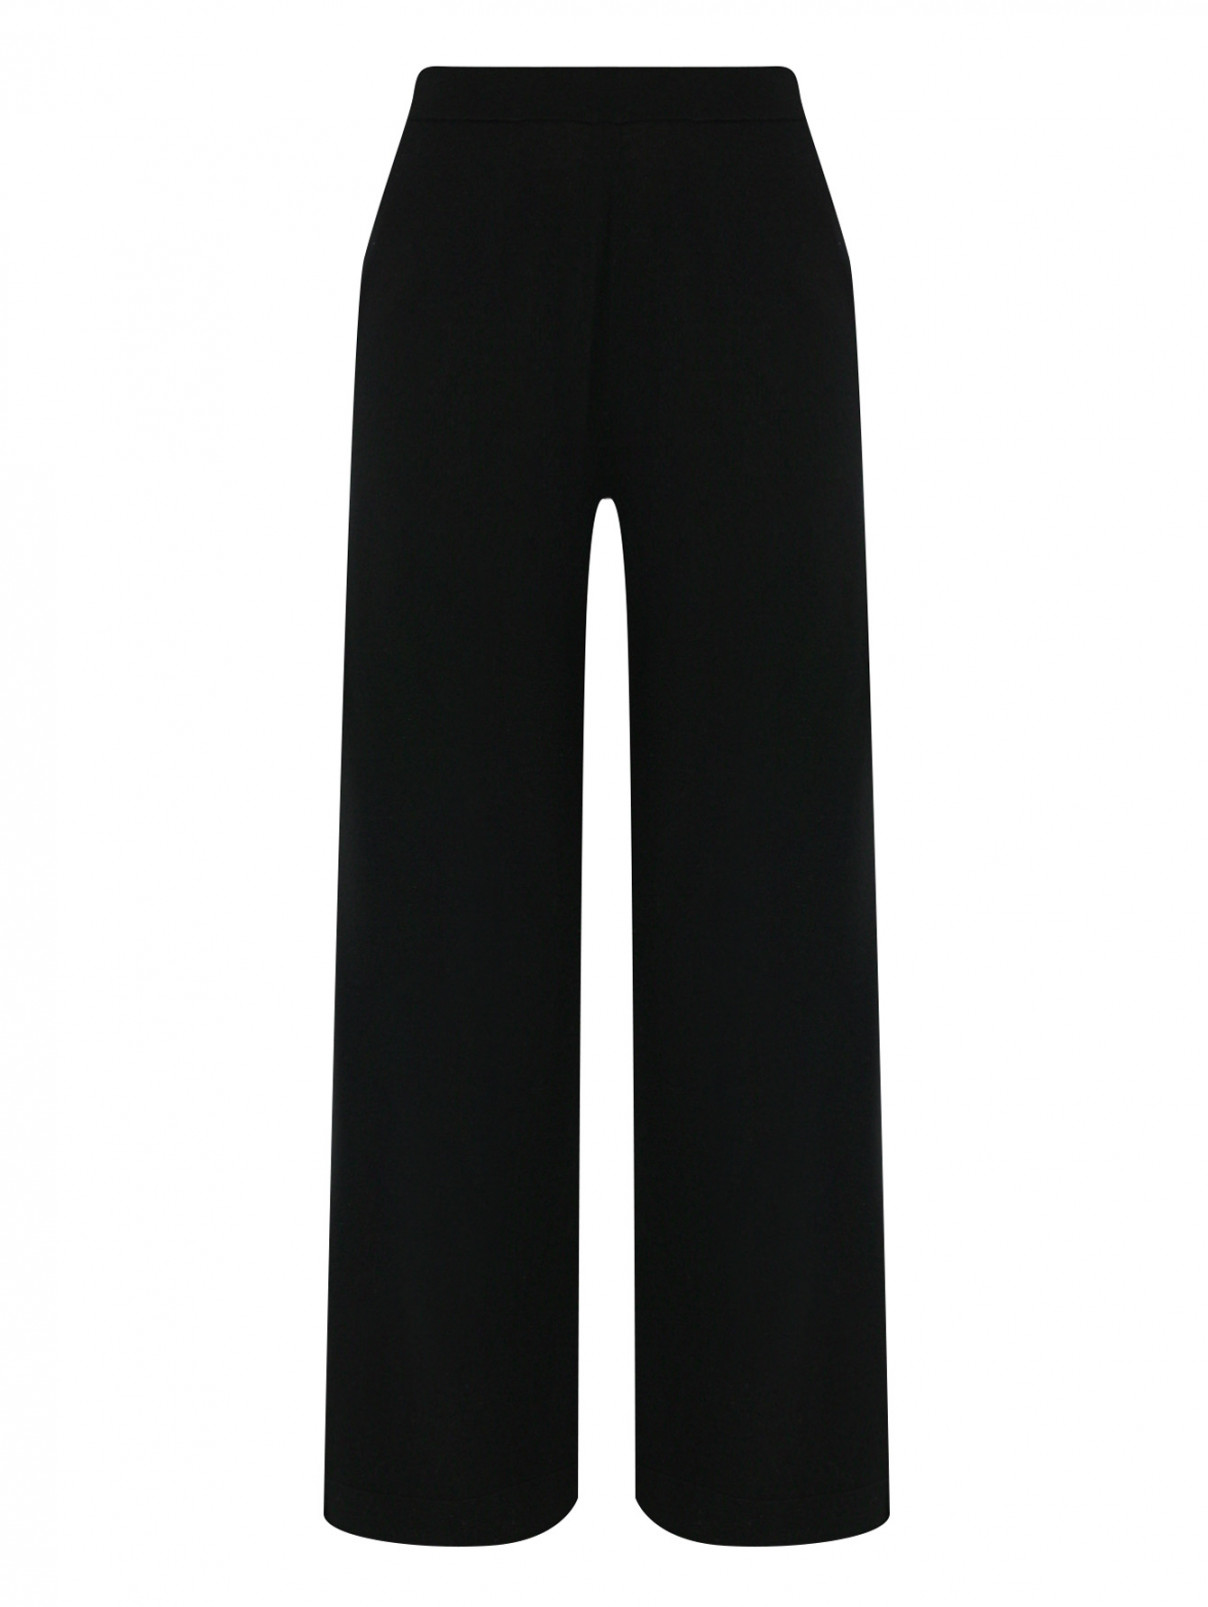 Трикотажные брюки из шерсти на резинке Allude  –  Общий вид  – Цвет:  Черный